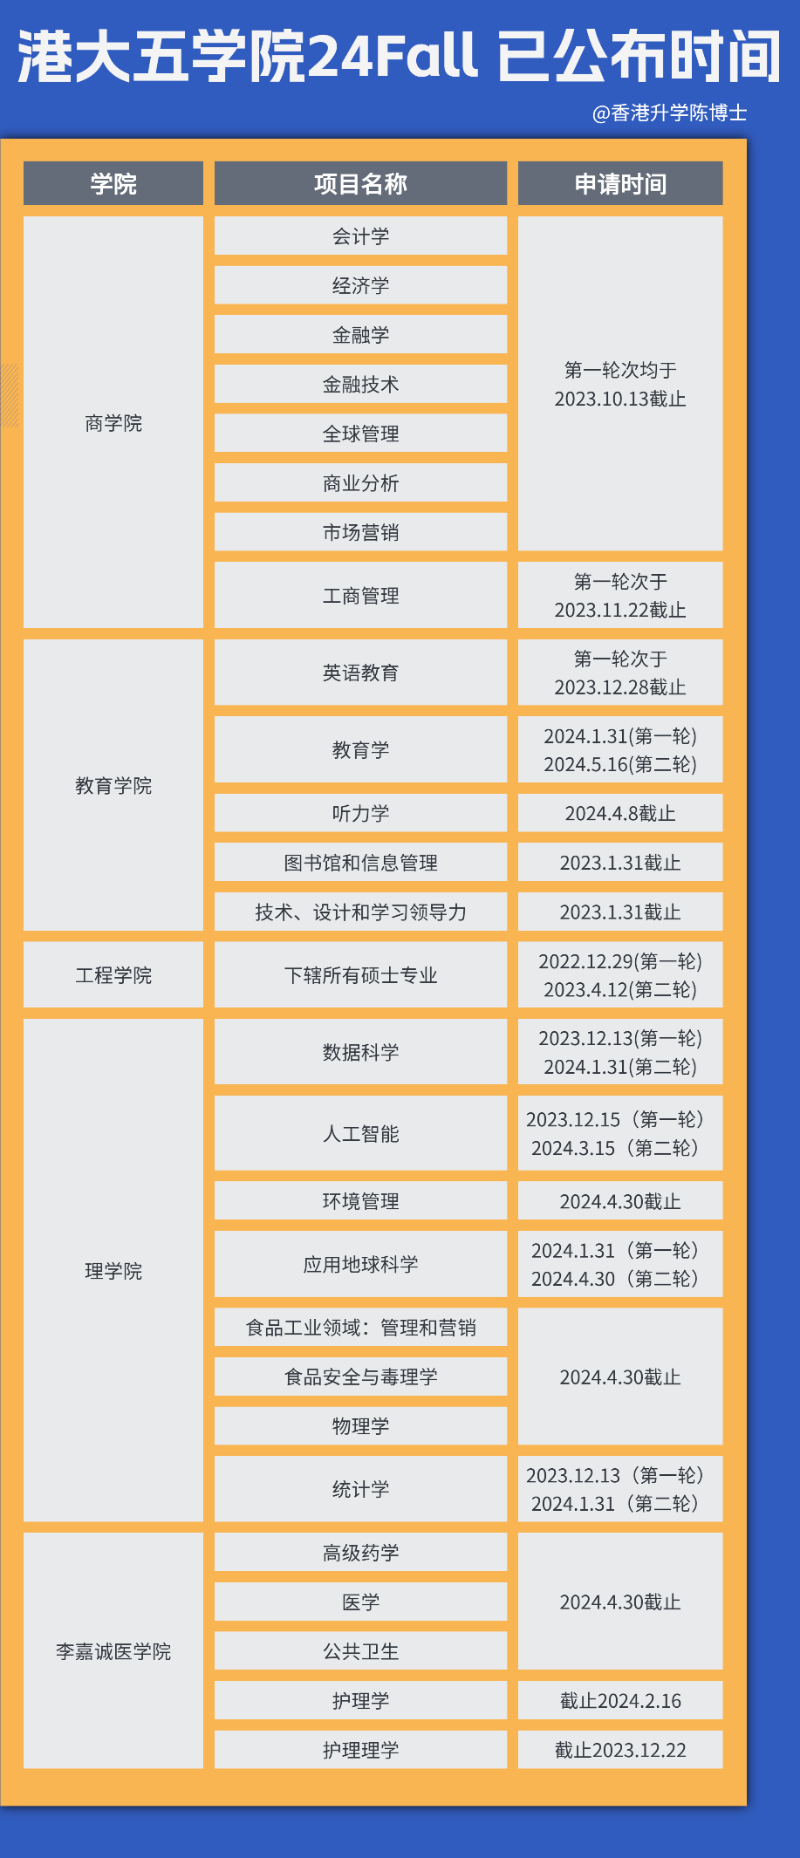 香港大学五大学院公布24Fall硕士申报的截止时间。